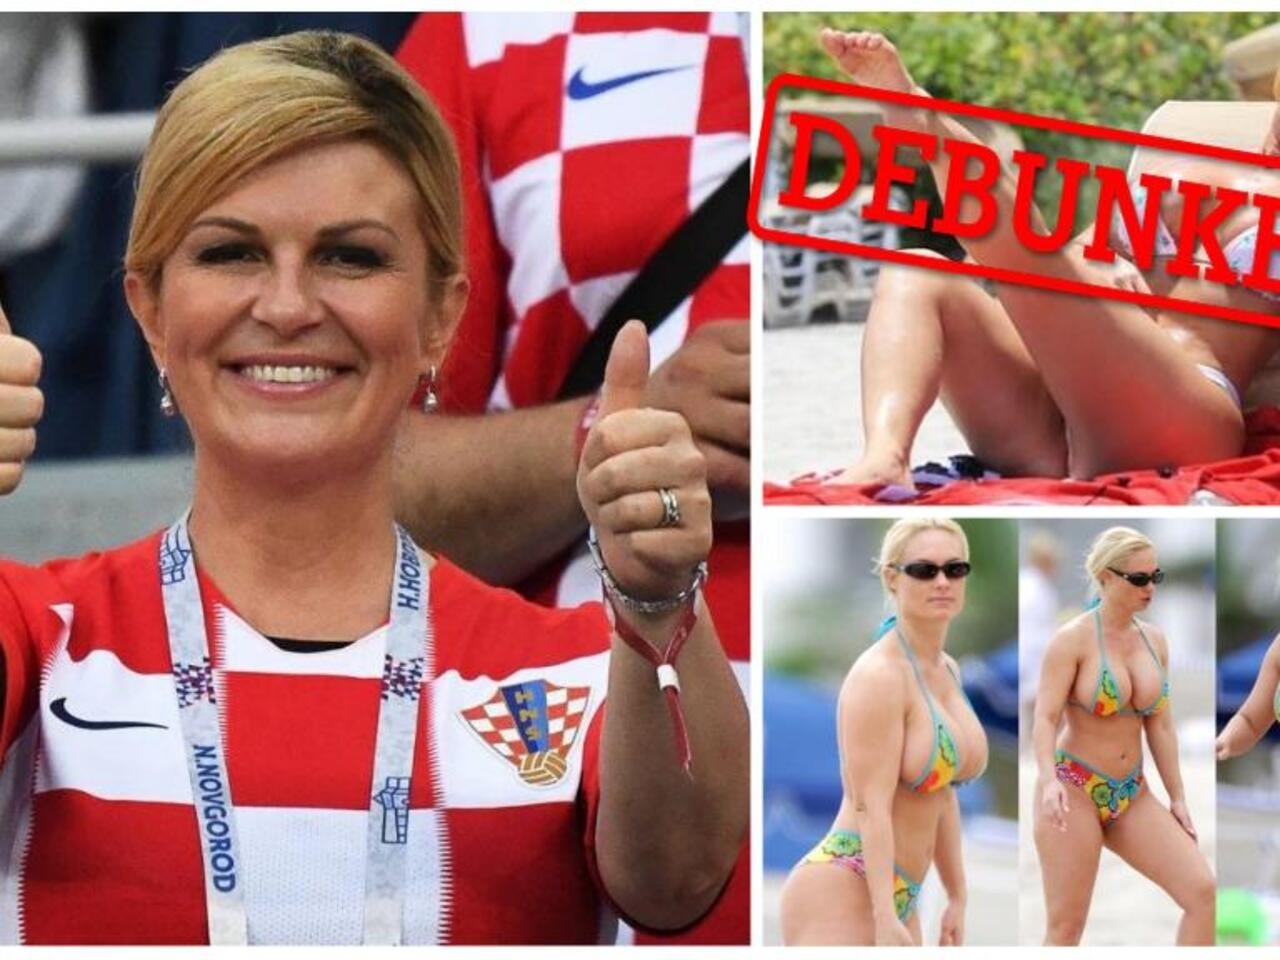 charlene burnside recommends president of croatia in bikini pic